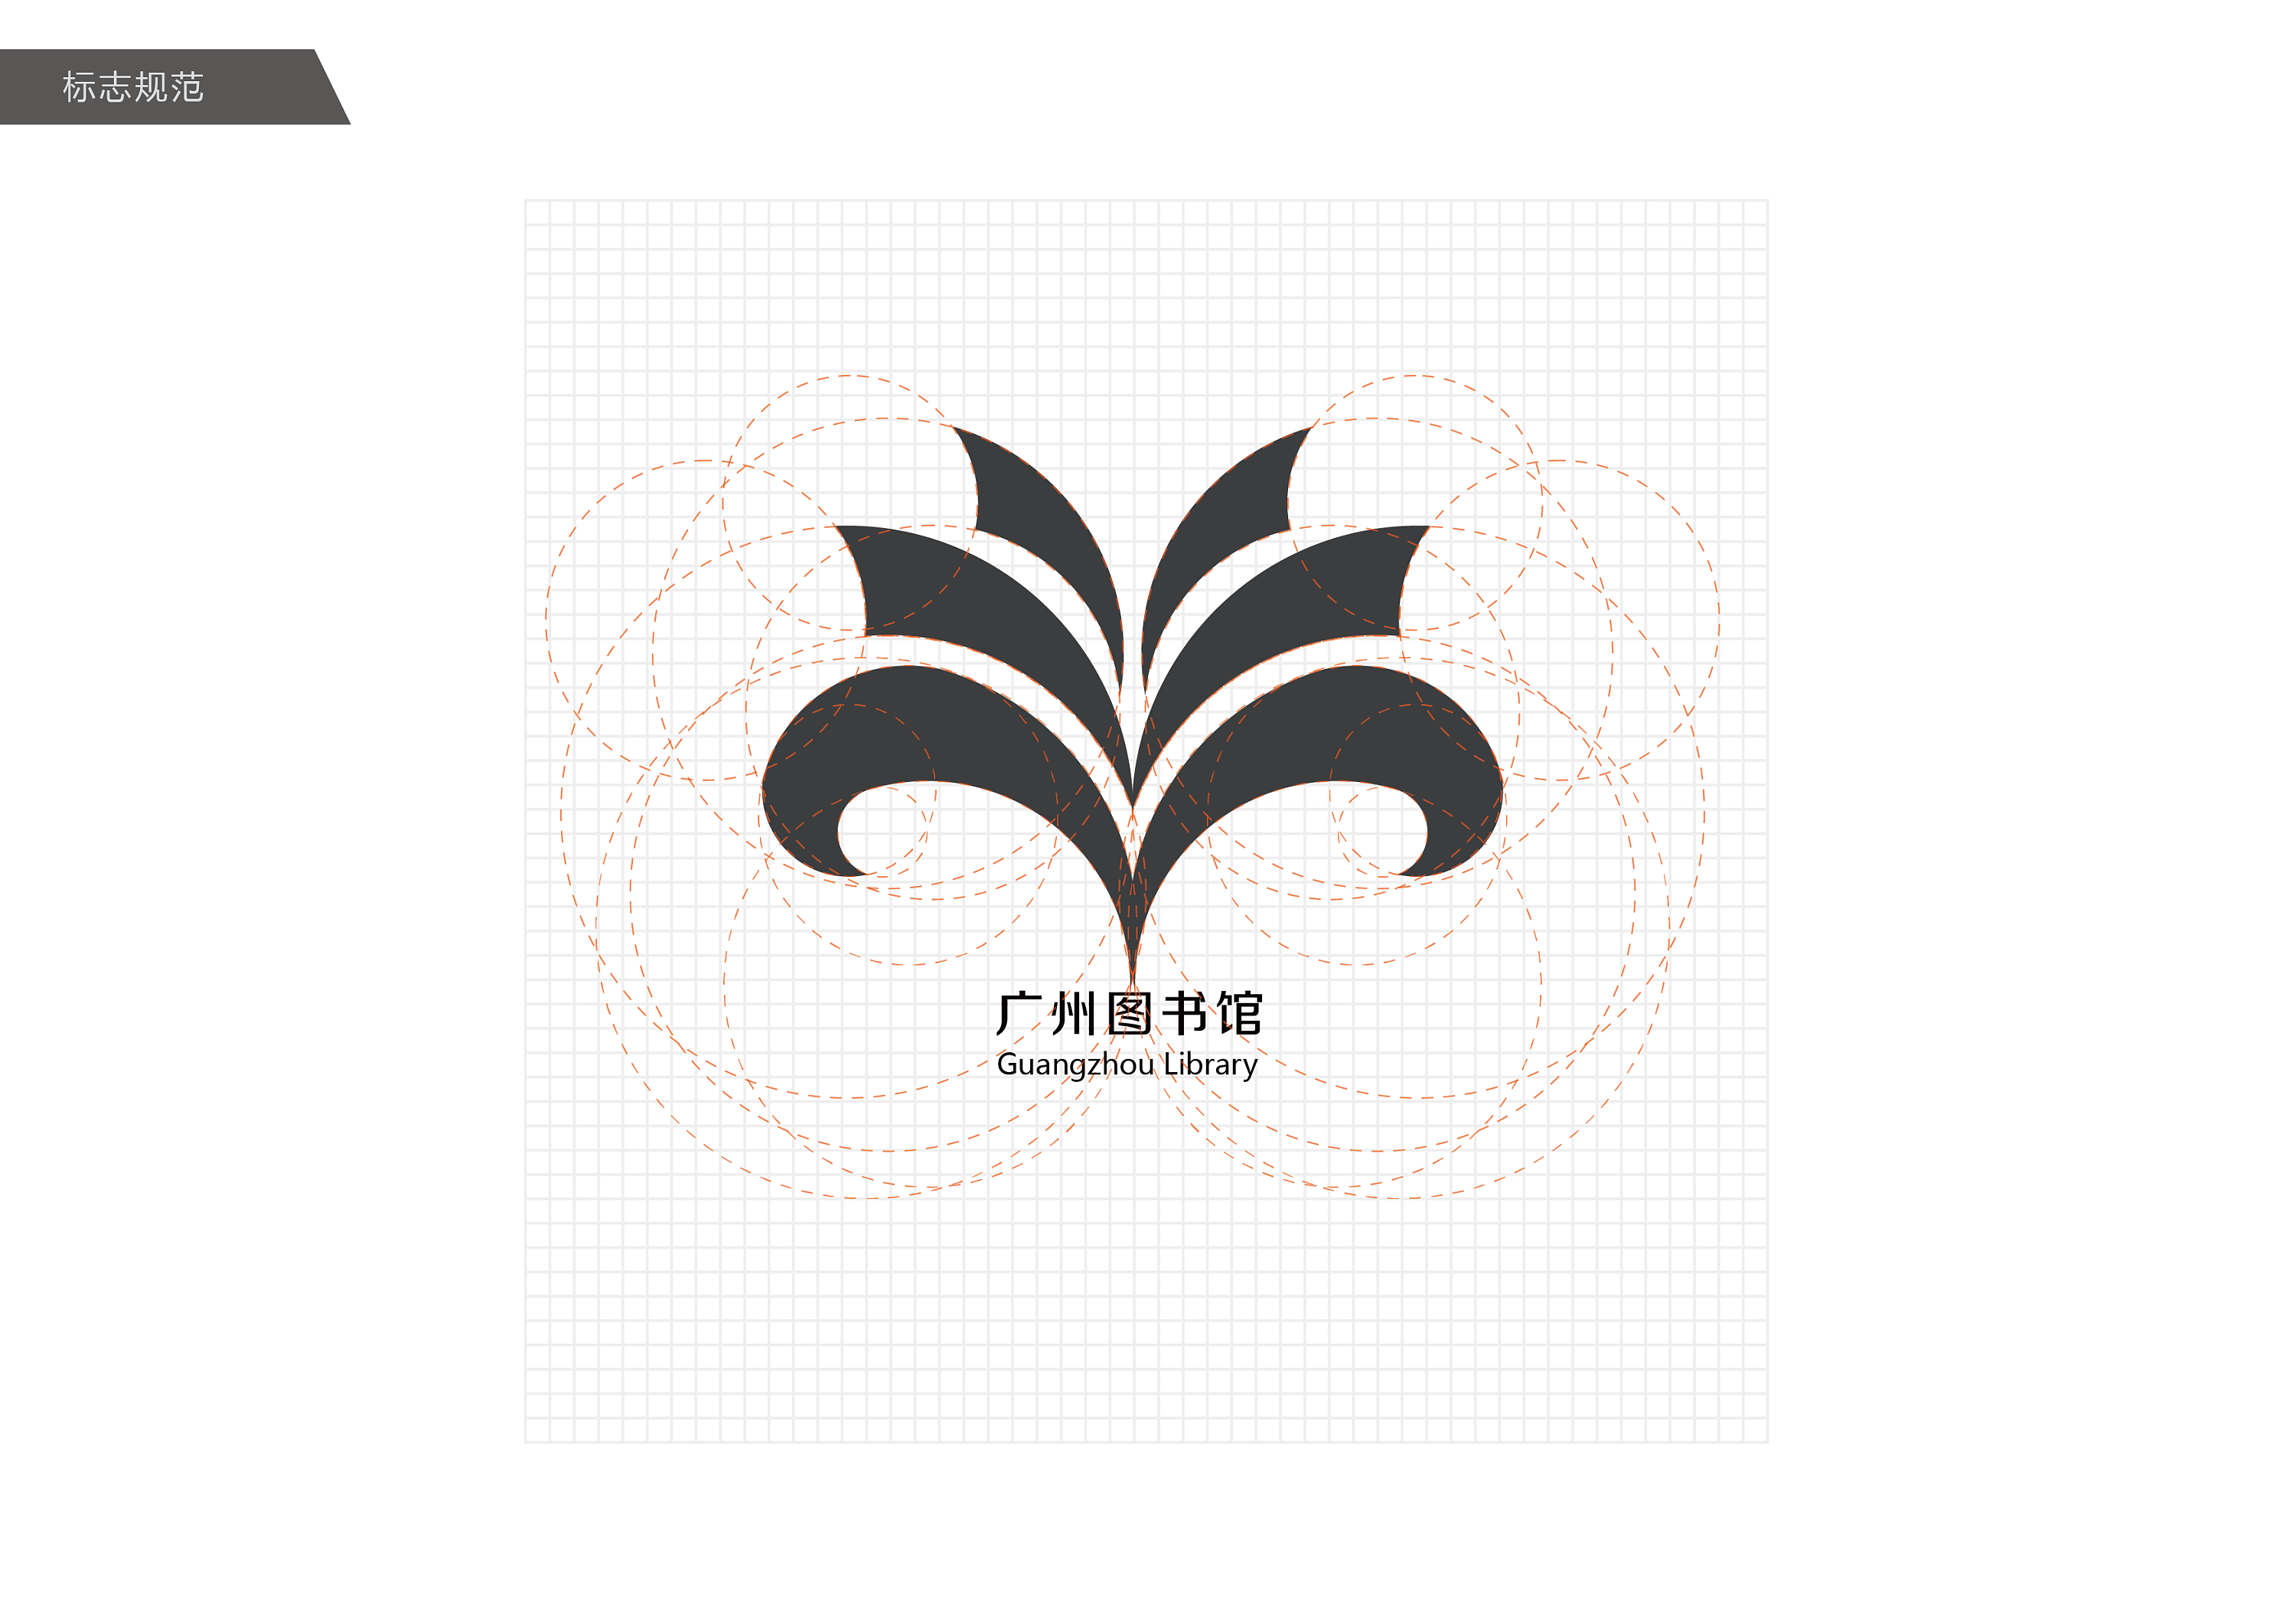 logo标志设计(广州图书馆)